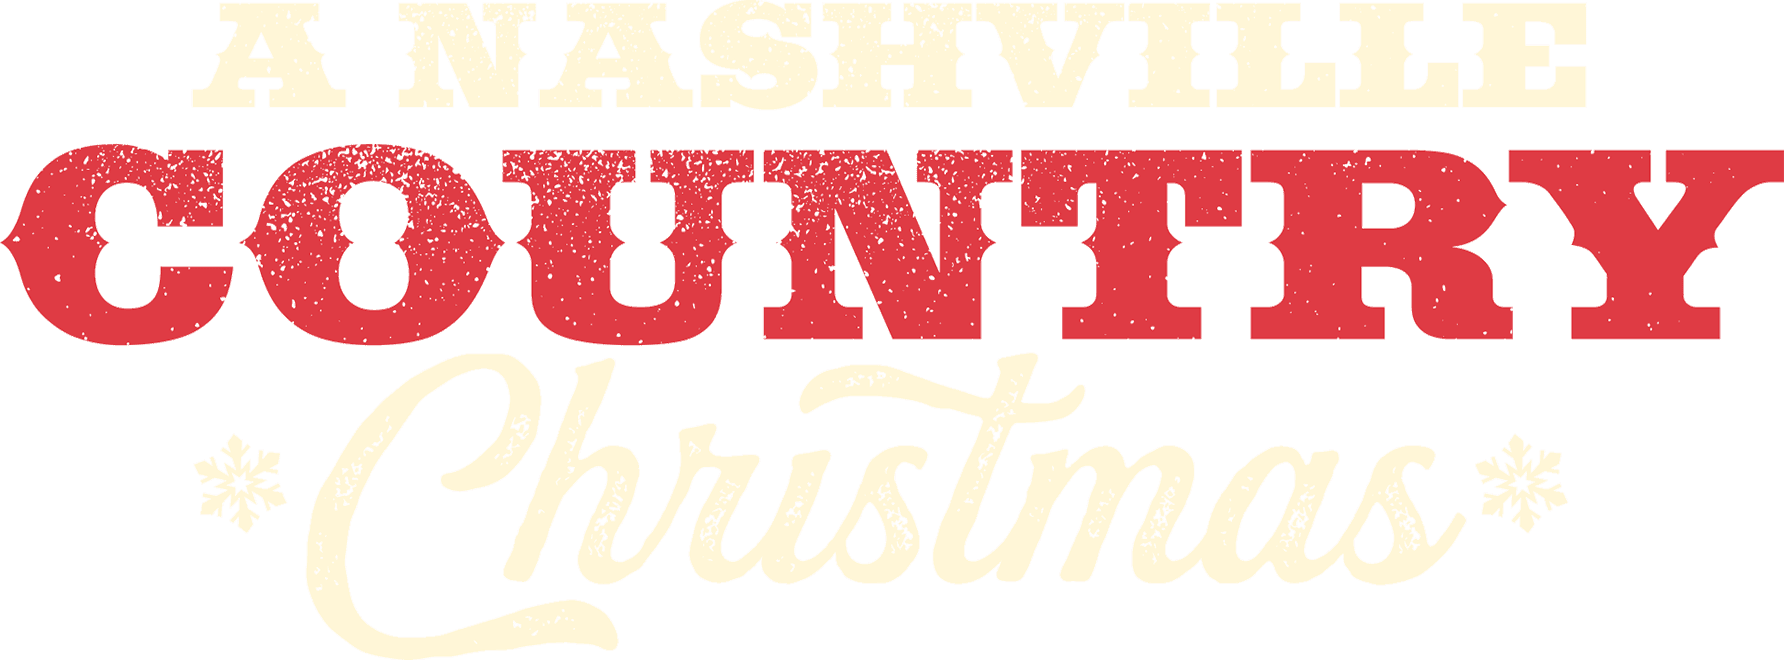 A Nashville Country Christmas logo